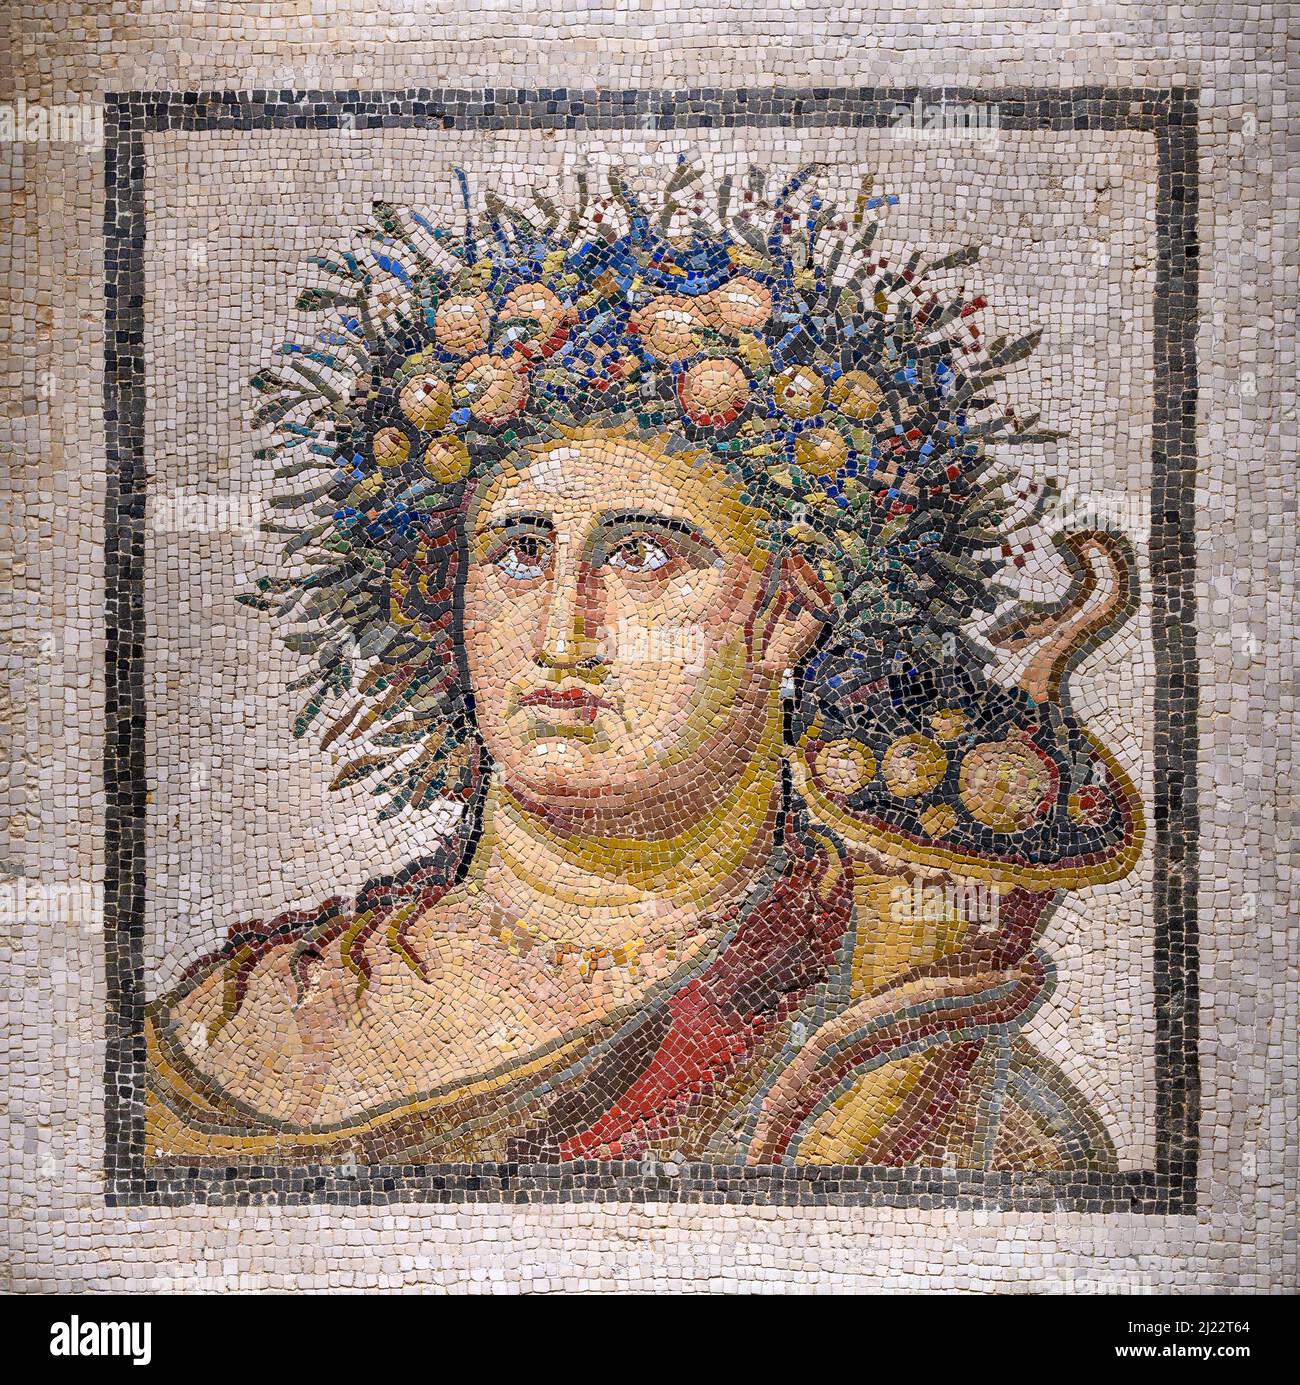 Ein Kalkstein und Marmor, römisches Mosaik, das das Genie des Jahres darstellt. In der römischen Religion und Mythologie war der Genius ein Schutzgeist, ähnlich einem g Stockfoto